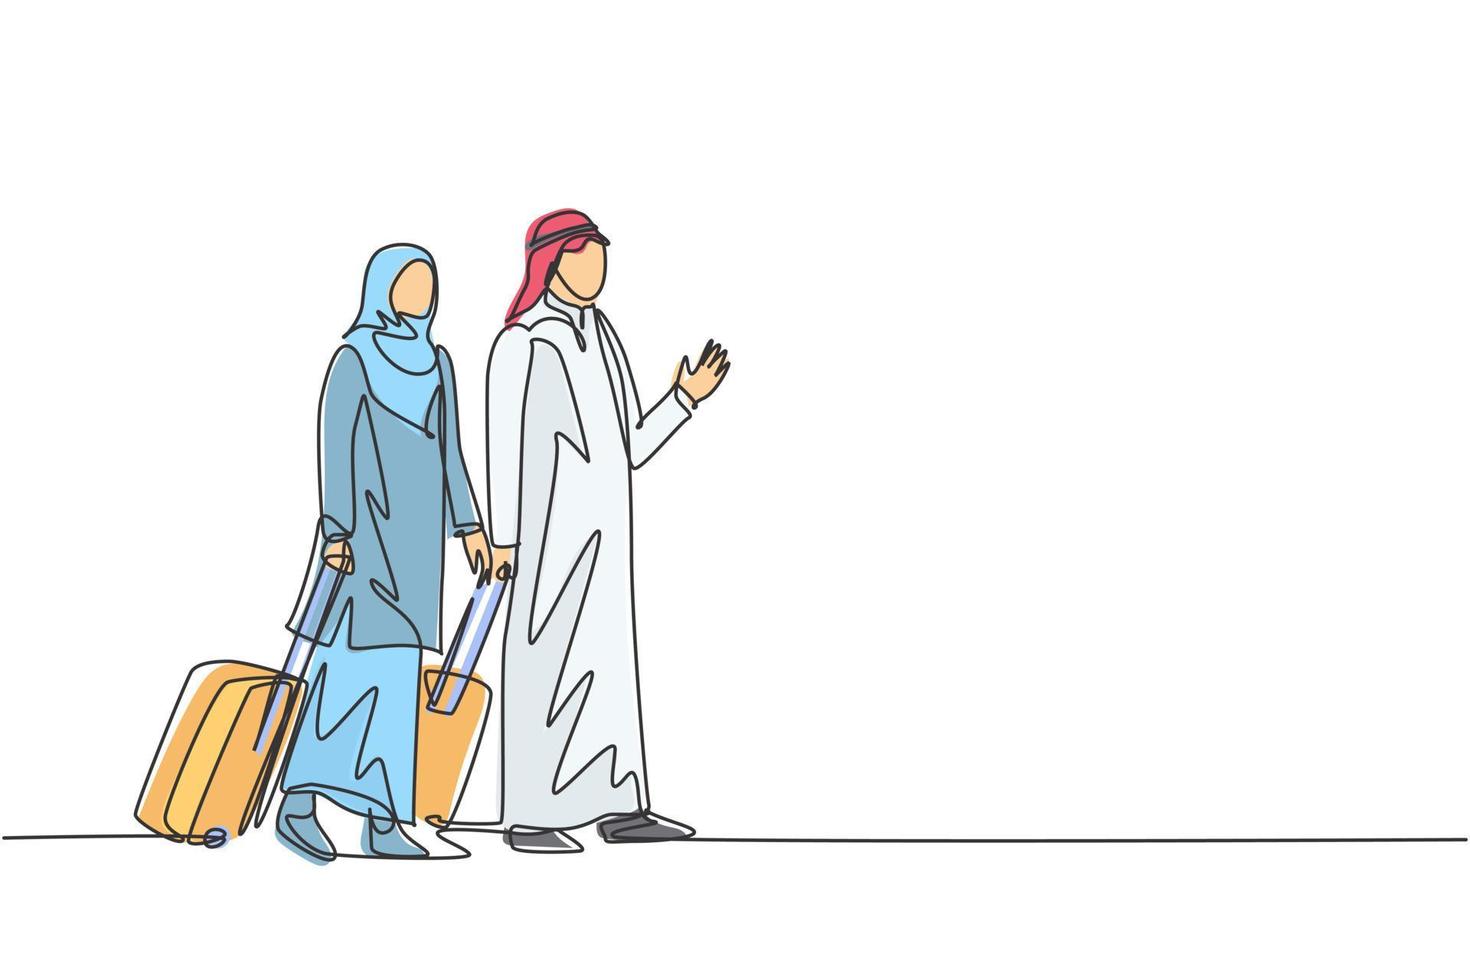 un unico disegno a tratteggio di giovani dipendenti musulmani felici maschi e femmine dopo un viaggio d'affari. shmag di stoffa dell'arabia saudita, kandora, thobe, ghutra, hijab. illustrazione vettoriale di disegno di disegno di linea continua